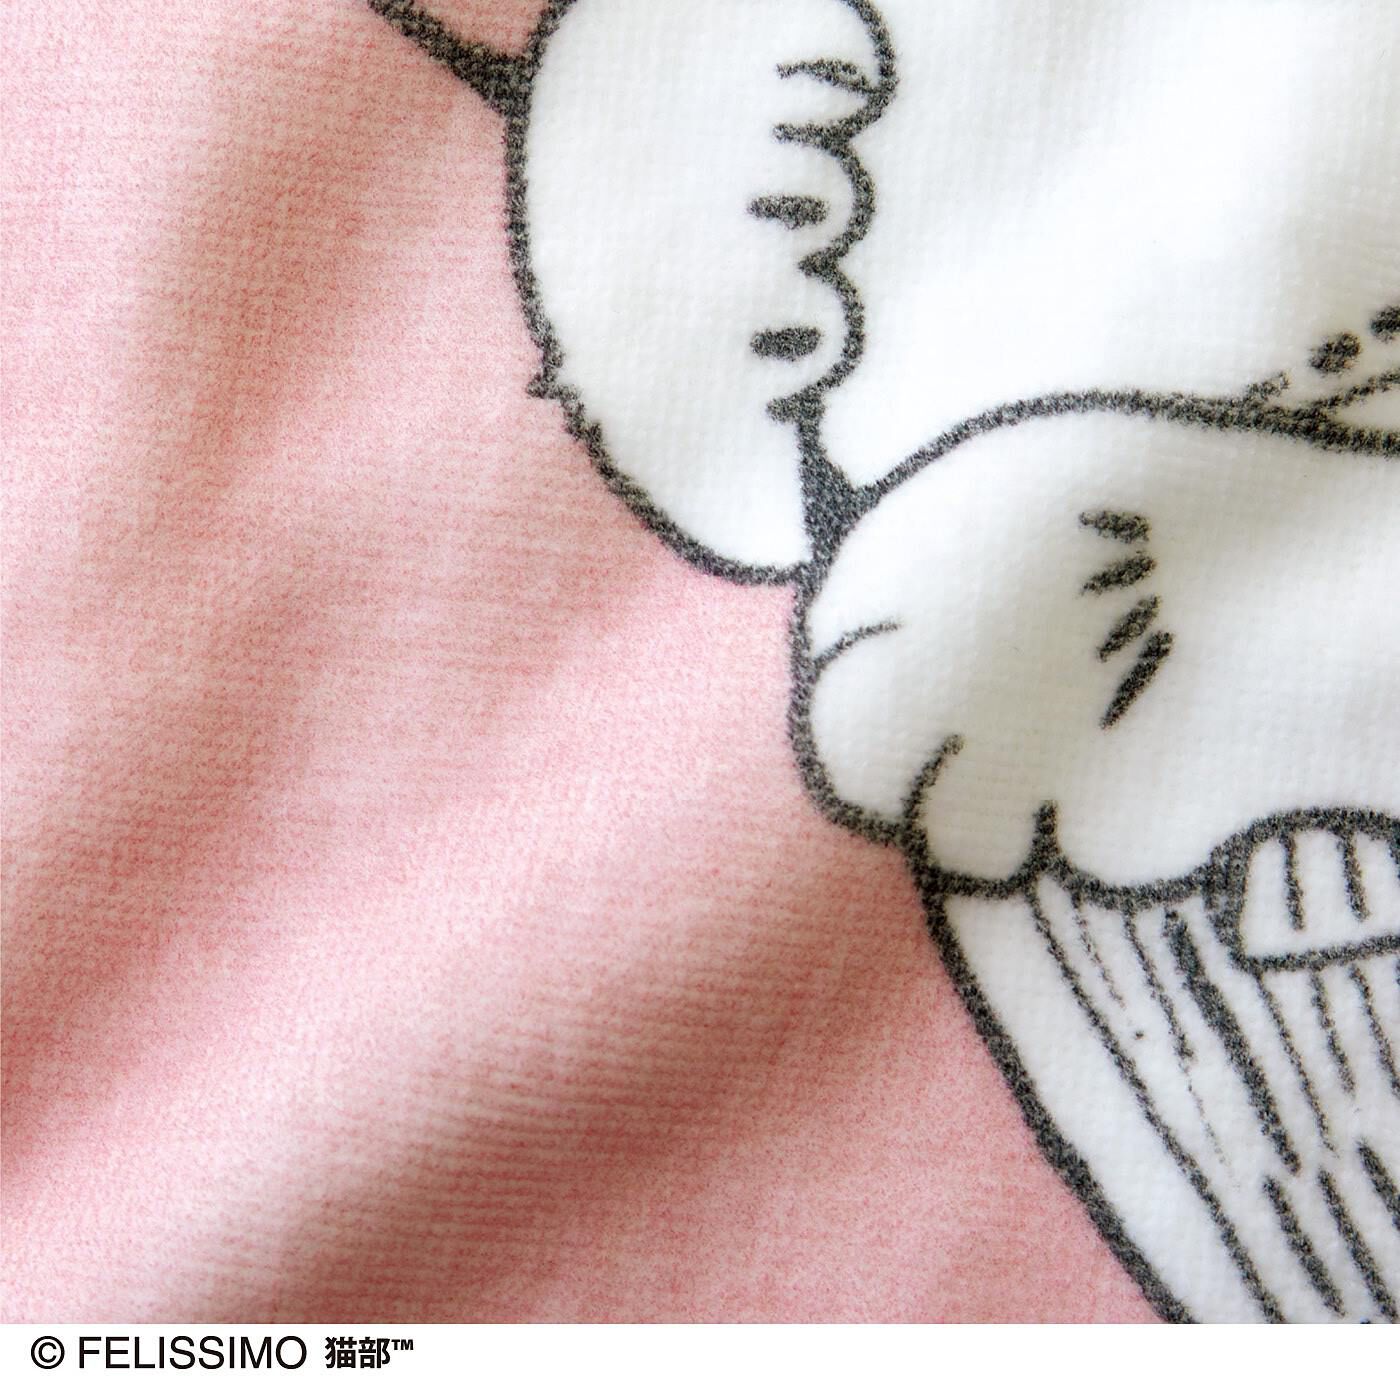 猫部|漫画家 山野りんりんさんとつくった　添い寝気分にゃ ふんわりまくらカバーの会|肌ざわりやわらかなパイル生地。